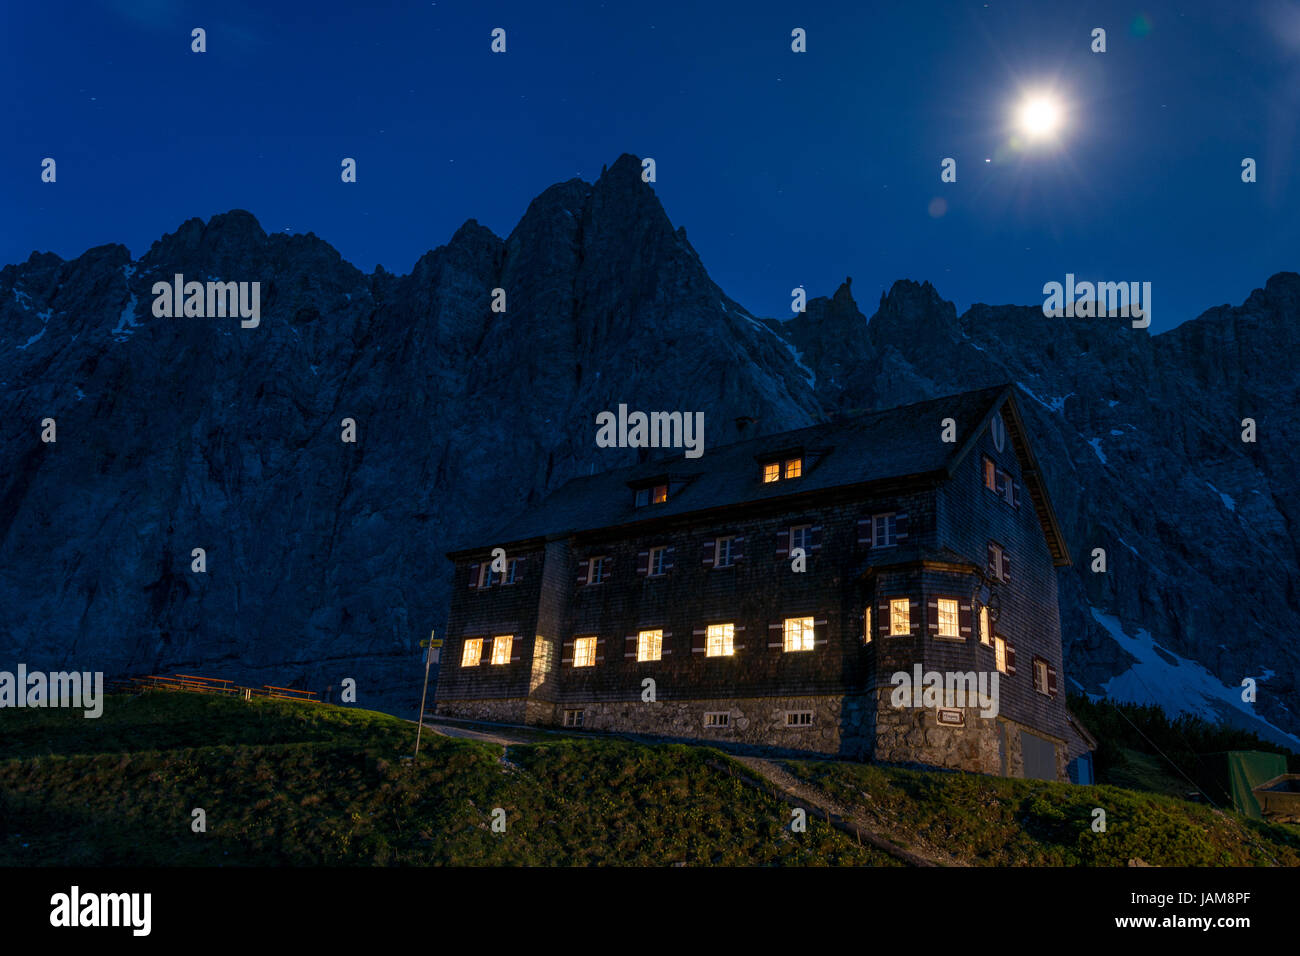 La Falkenhütte en face des montagnes de l'Karwendelgebirge durant la nuit en Autriche Banque D'Images